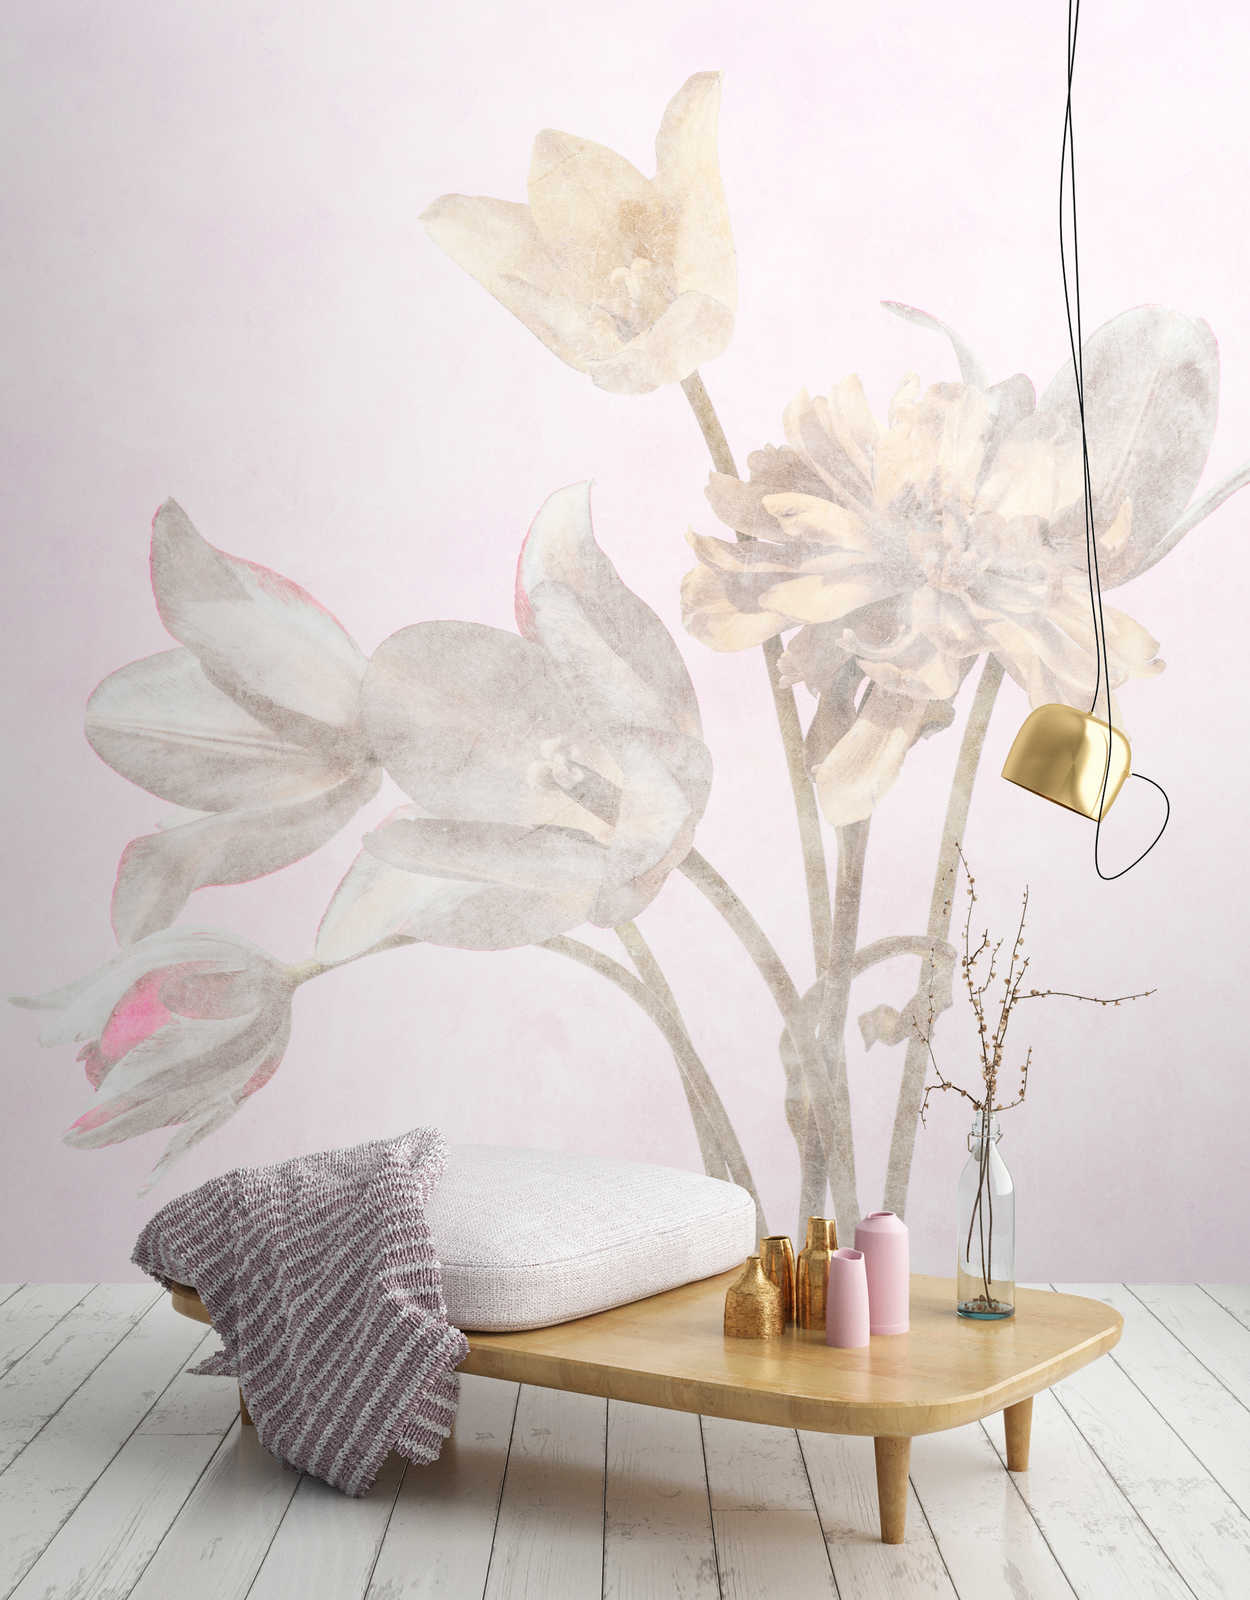             Morning Room 1 - Bloemen fotobehang bloeide in vervaagde stijl
        